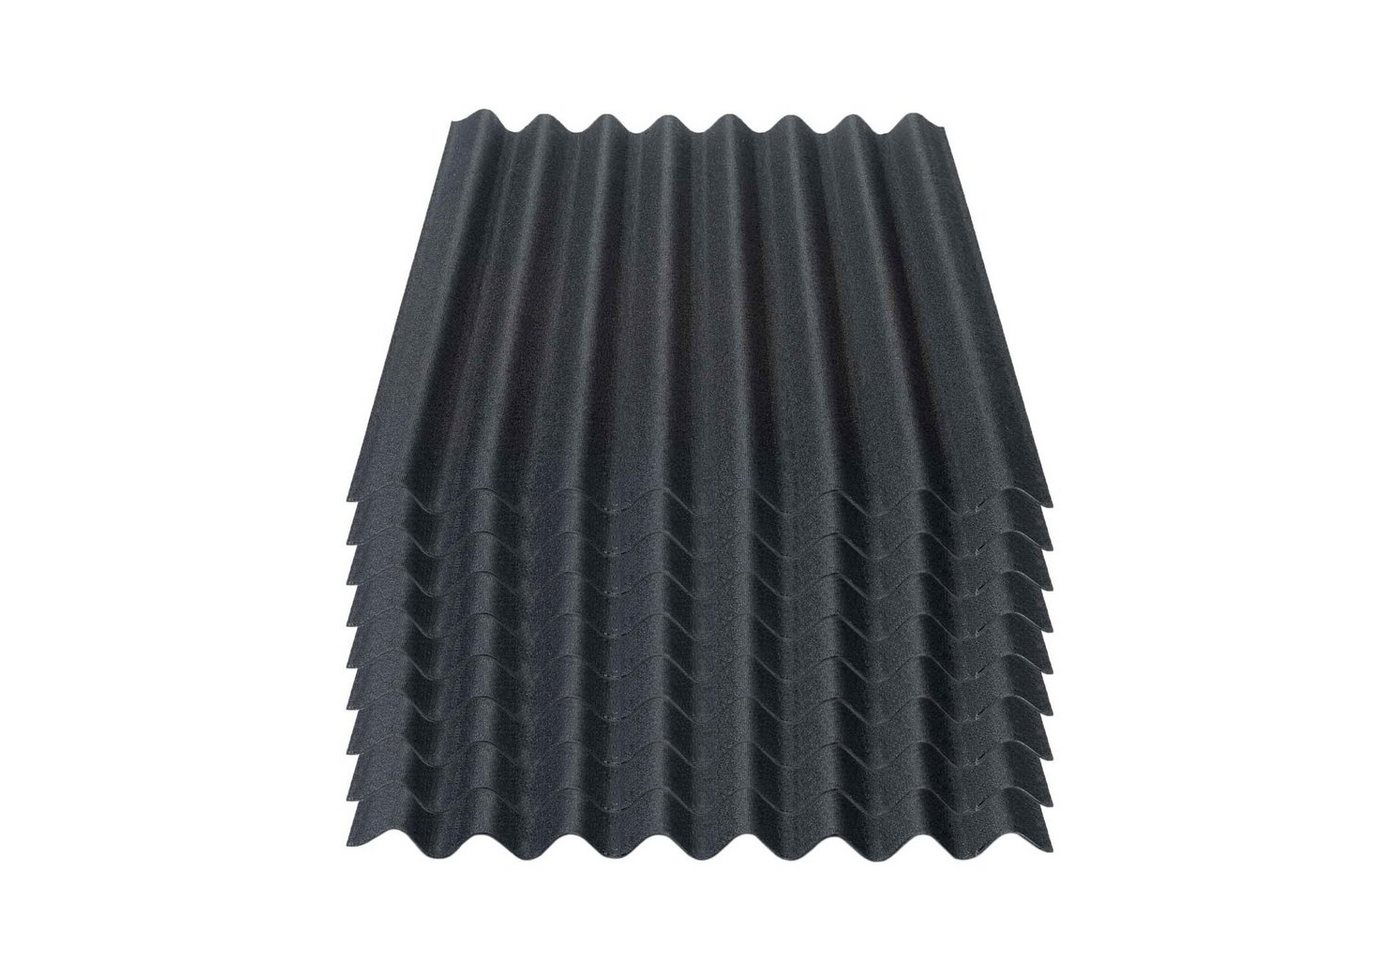 Onduline Dachpappe Onduline Easyline Dachplatte Wandplatte Bitumenwellplatten Wellplatte 9x0,76m² - schwarz, wellig, 6.84 m² pro Paket, (9-St) von Onduline